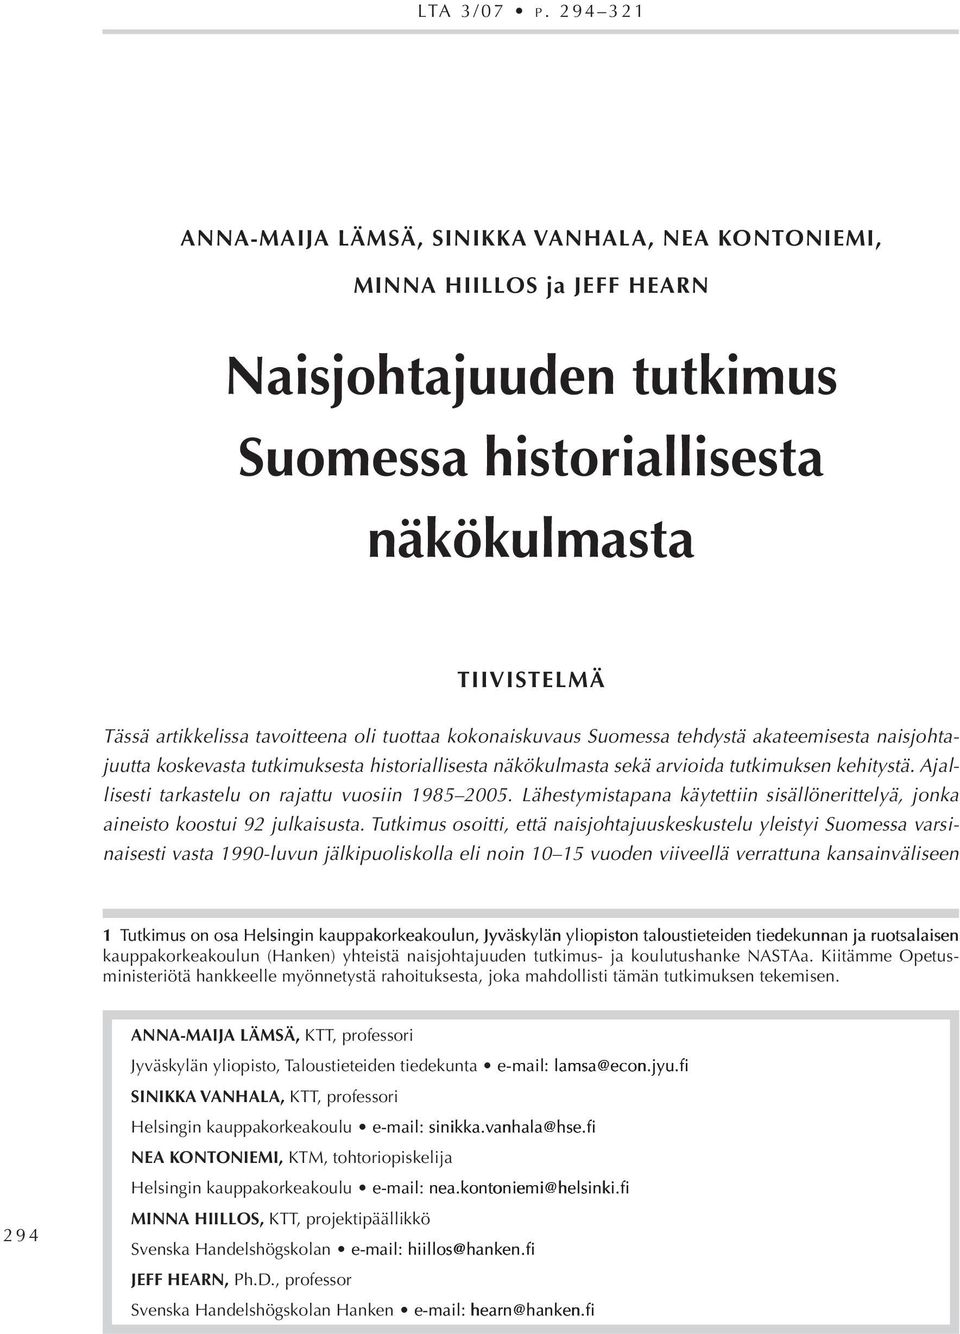 oli tuottaa kokonaiskuvaus Suomessa tehdystä akateemisesta naisjohtajuutta koskevasta tutkimuksesta historiallisesta näkökulmasta sekä arvioida tutkimuksen kehitystä.